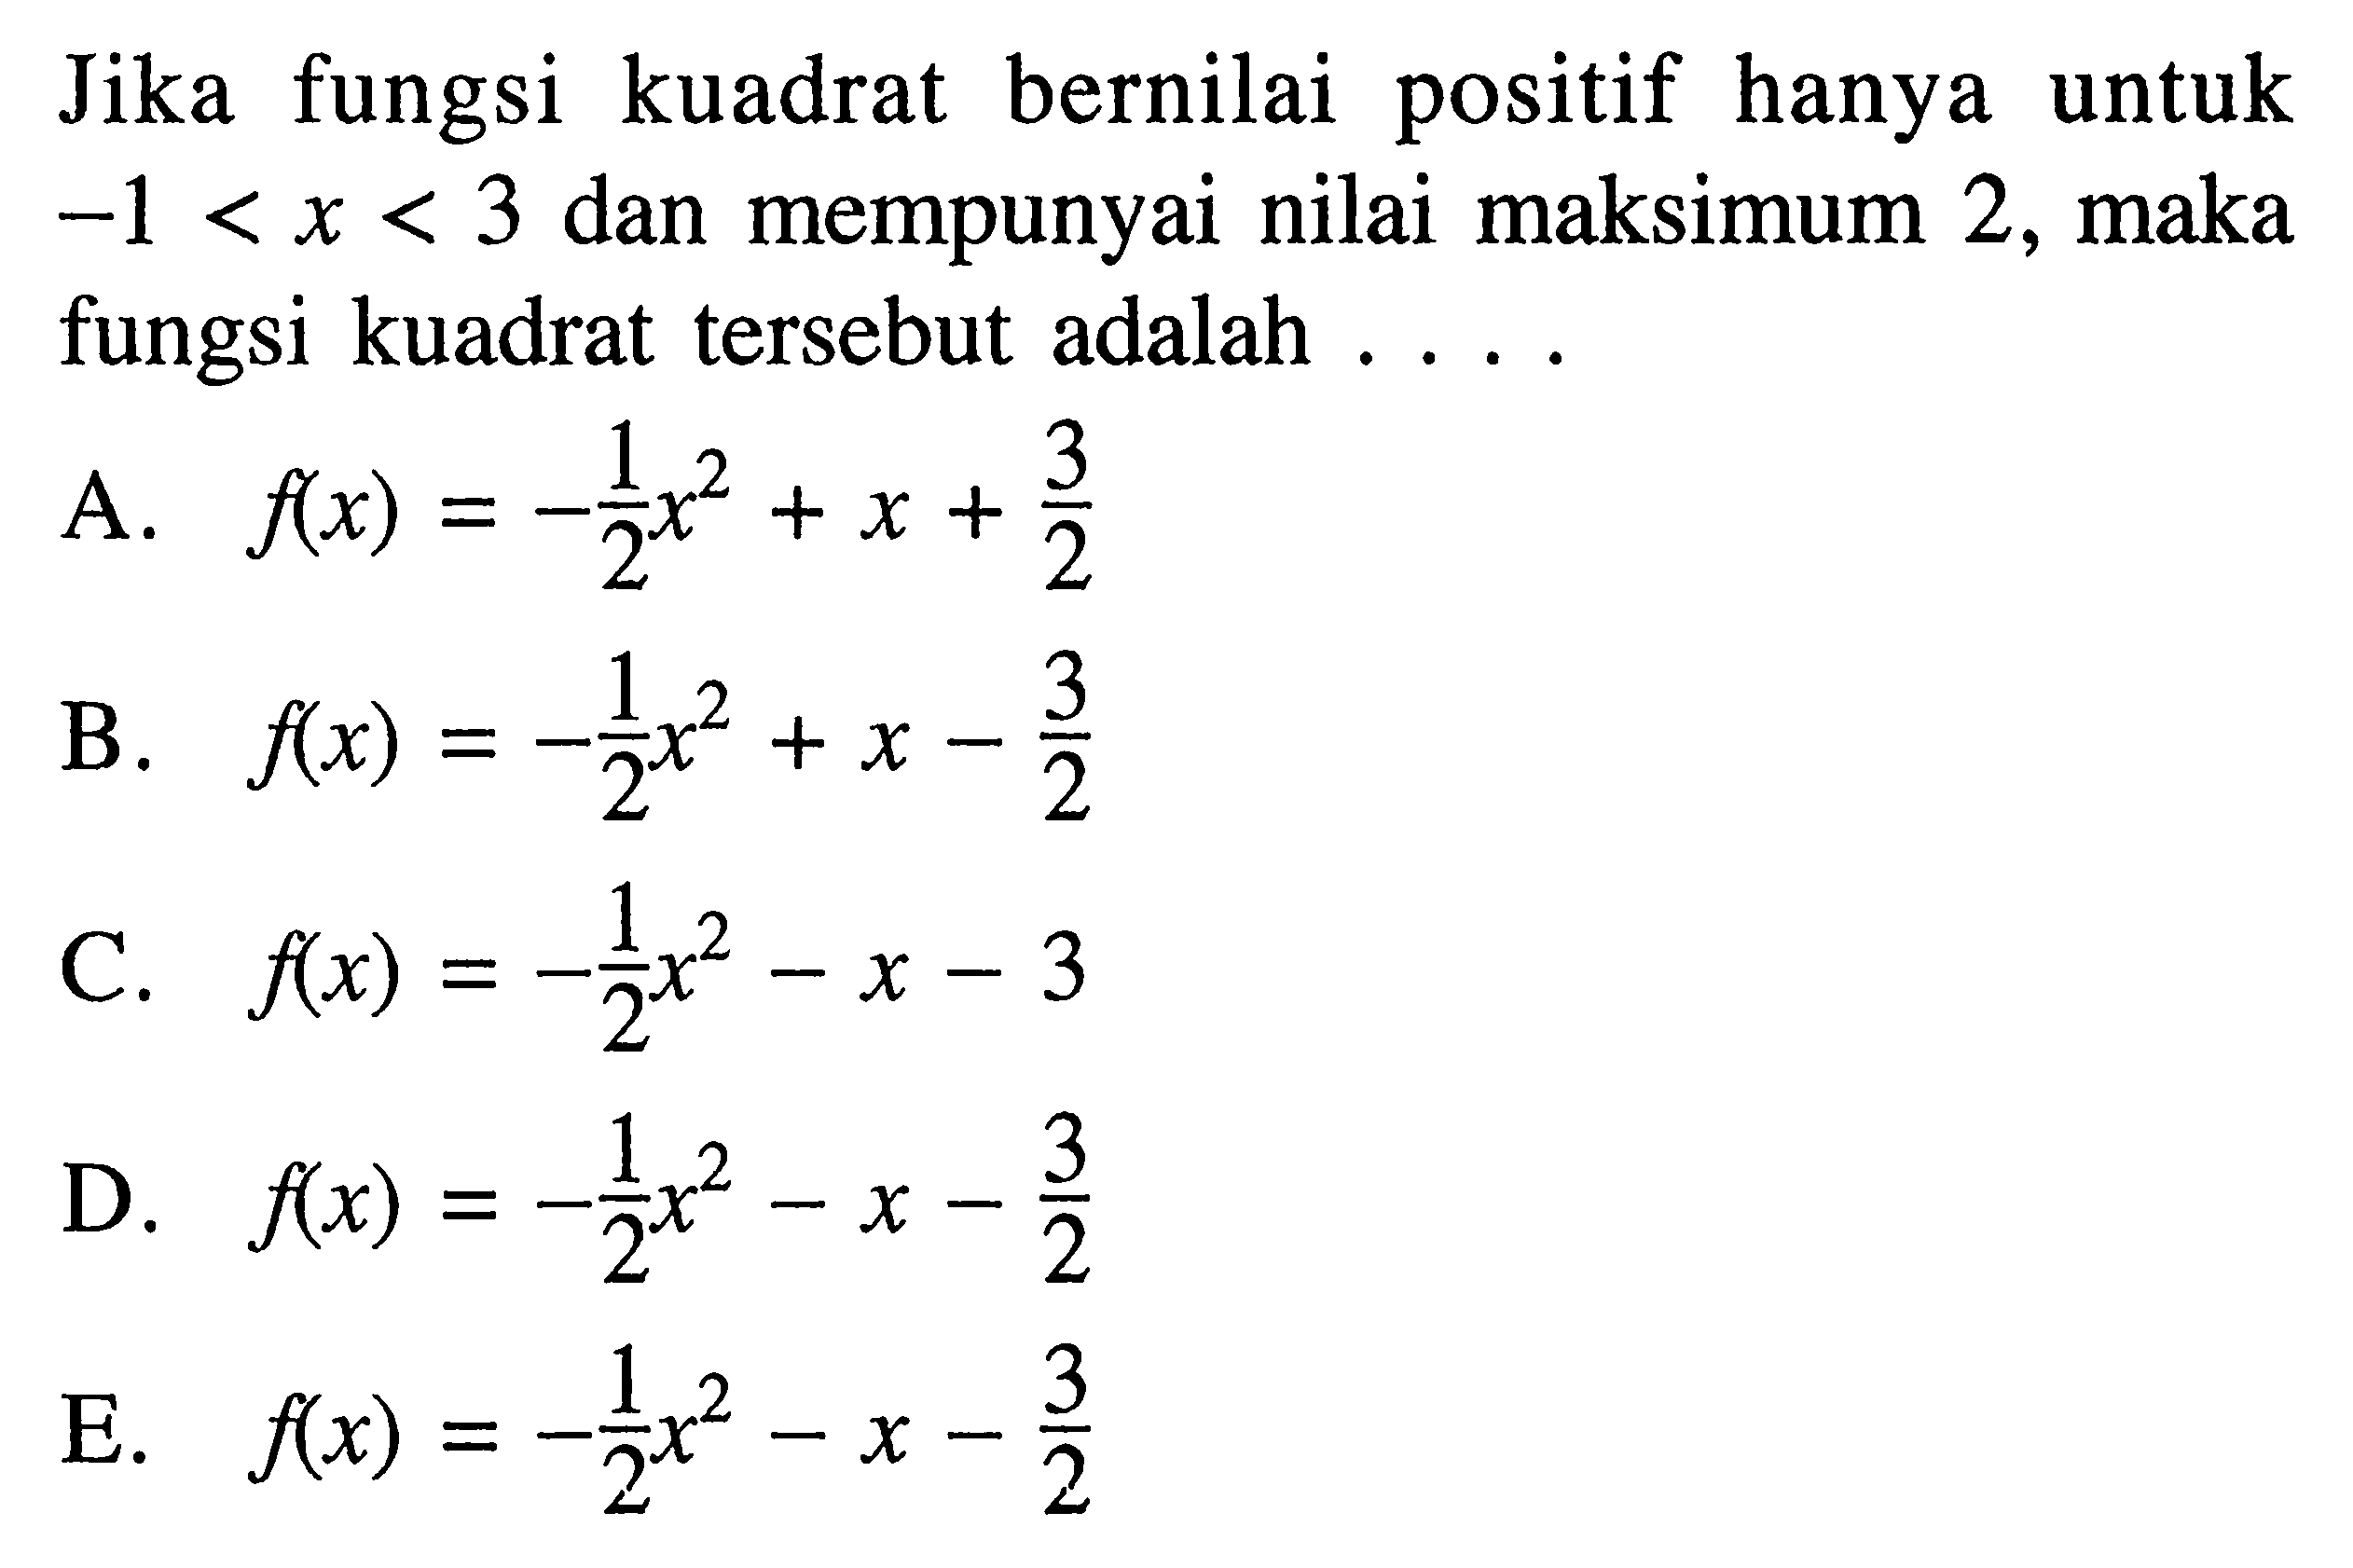 Jika fungsi kuadrat bernilai positif hanya untuk  -1<x<3  dan mempunyai nilai maksimum 2 , maka fungsi kuadrat tersebut adalah ....A.  f(x)=-1/2x^2+x+3/2 B.  f(x)=-1/2x^2+x-3/2 C.  f(x)=-1/2x^2-x-3 D.  f(x)=-1/2x^2-x-3/2 E.  f(x)=-1/2x^2-x-3/2 